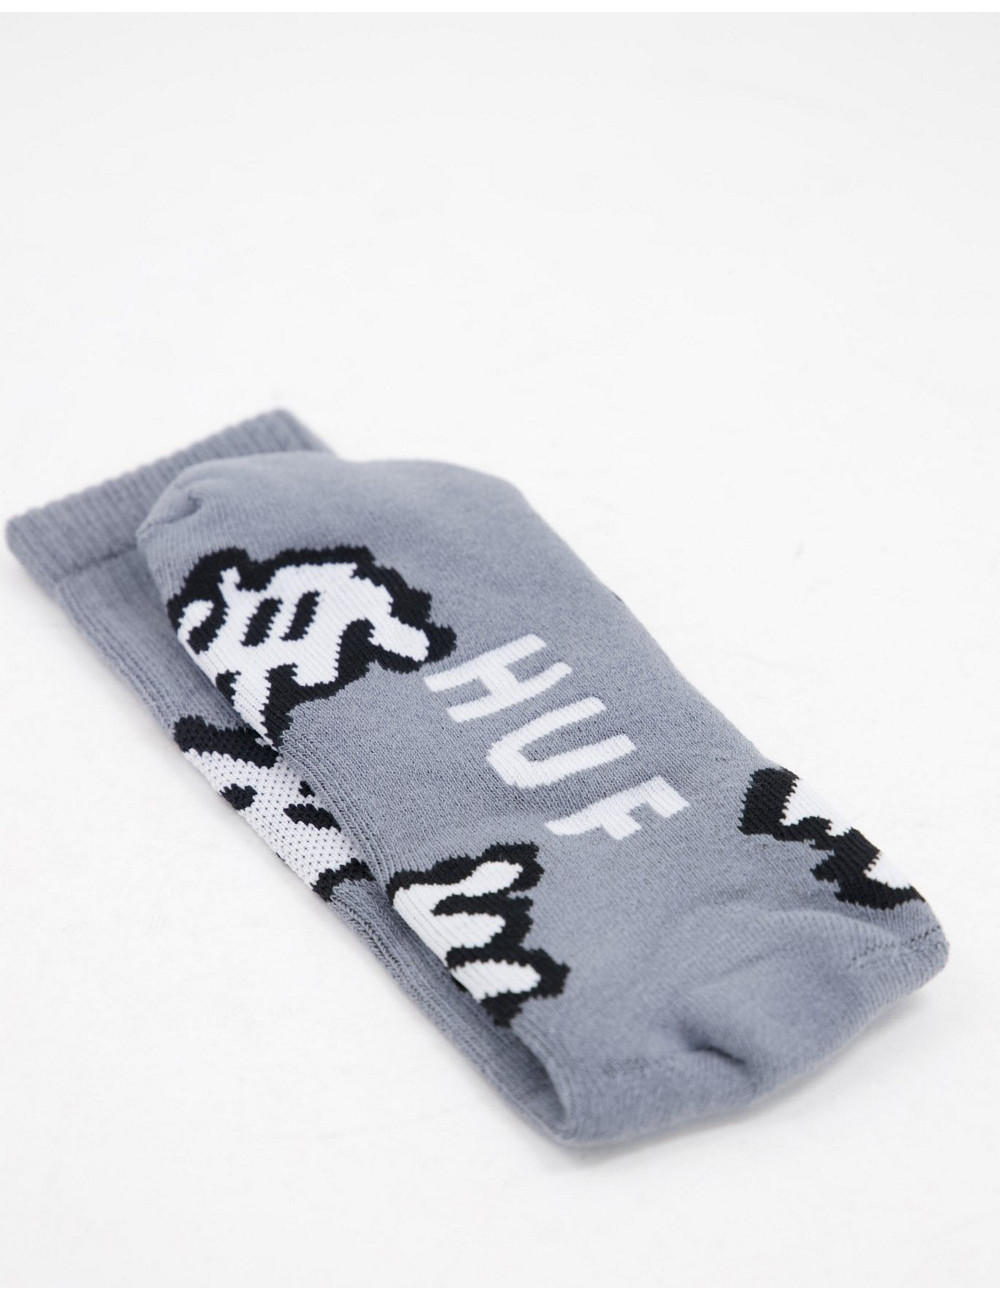 HUF cursor sock in grey